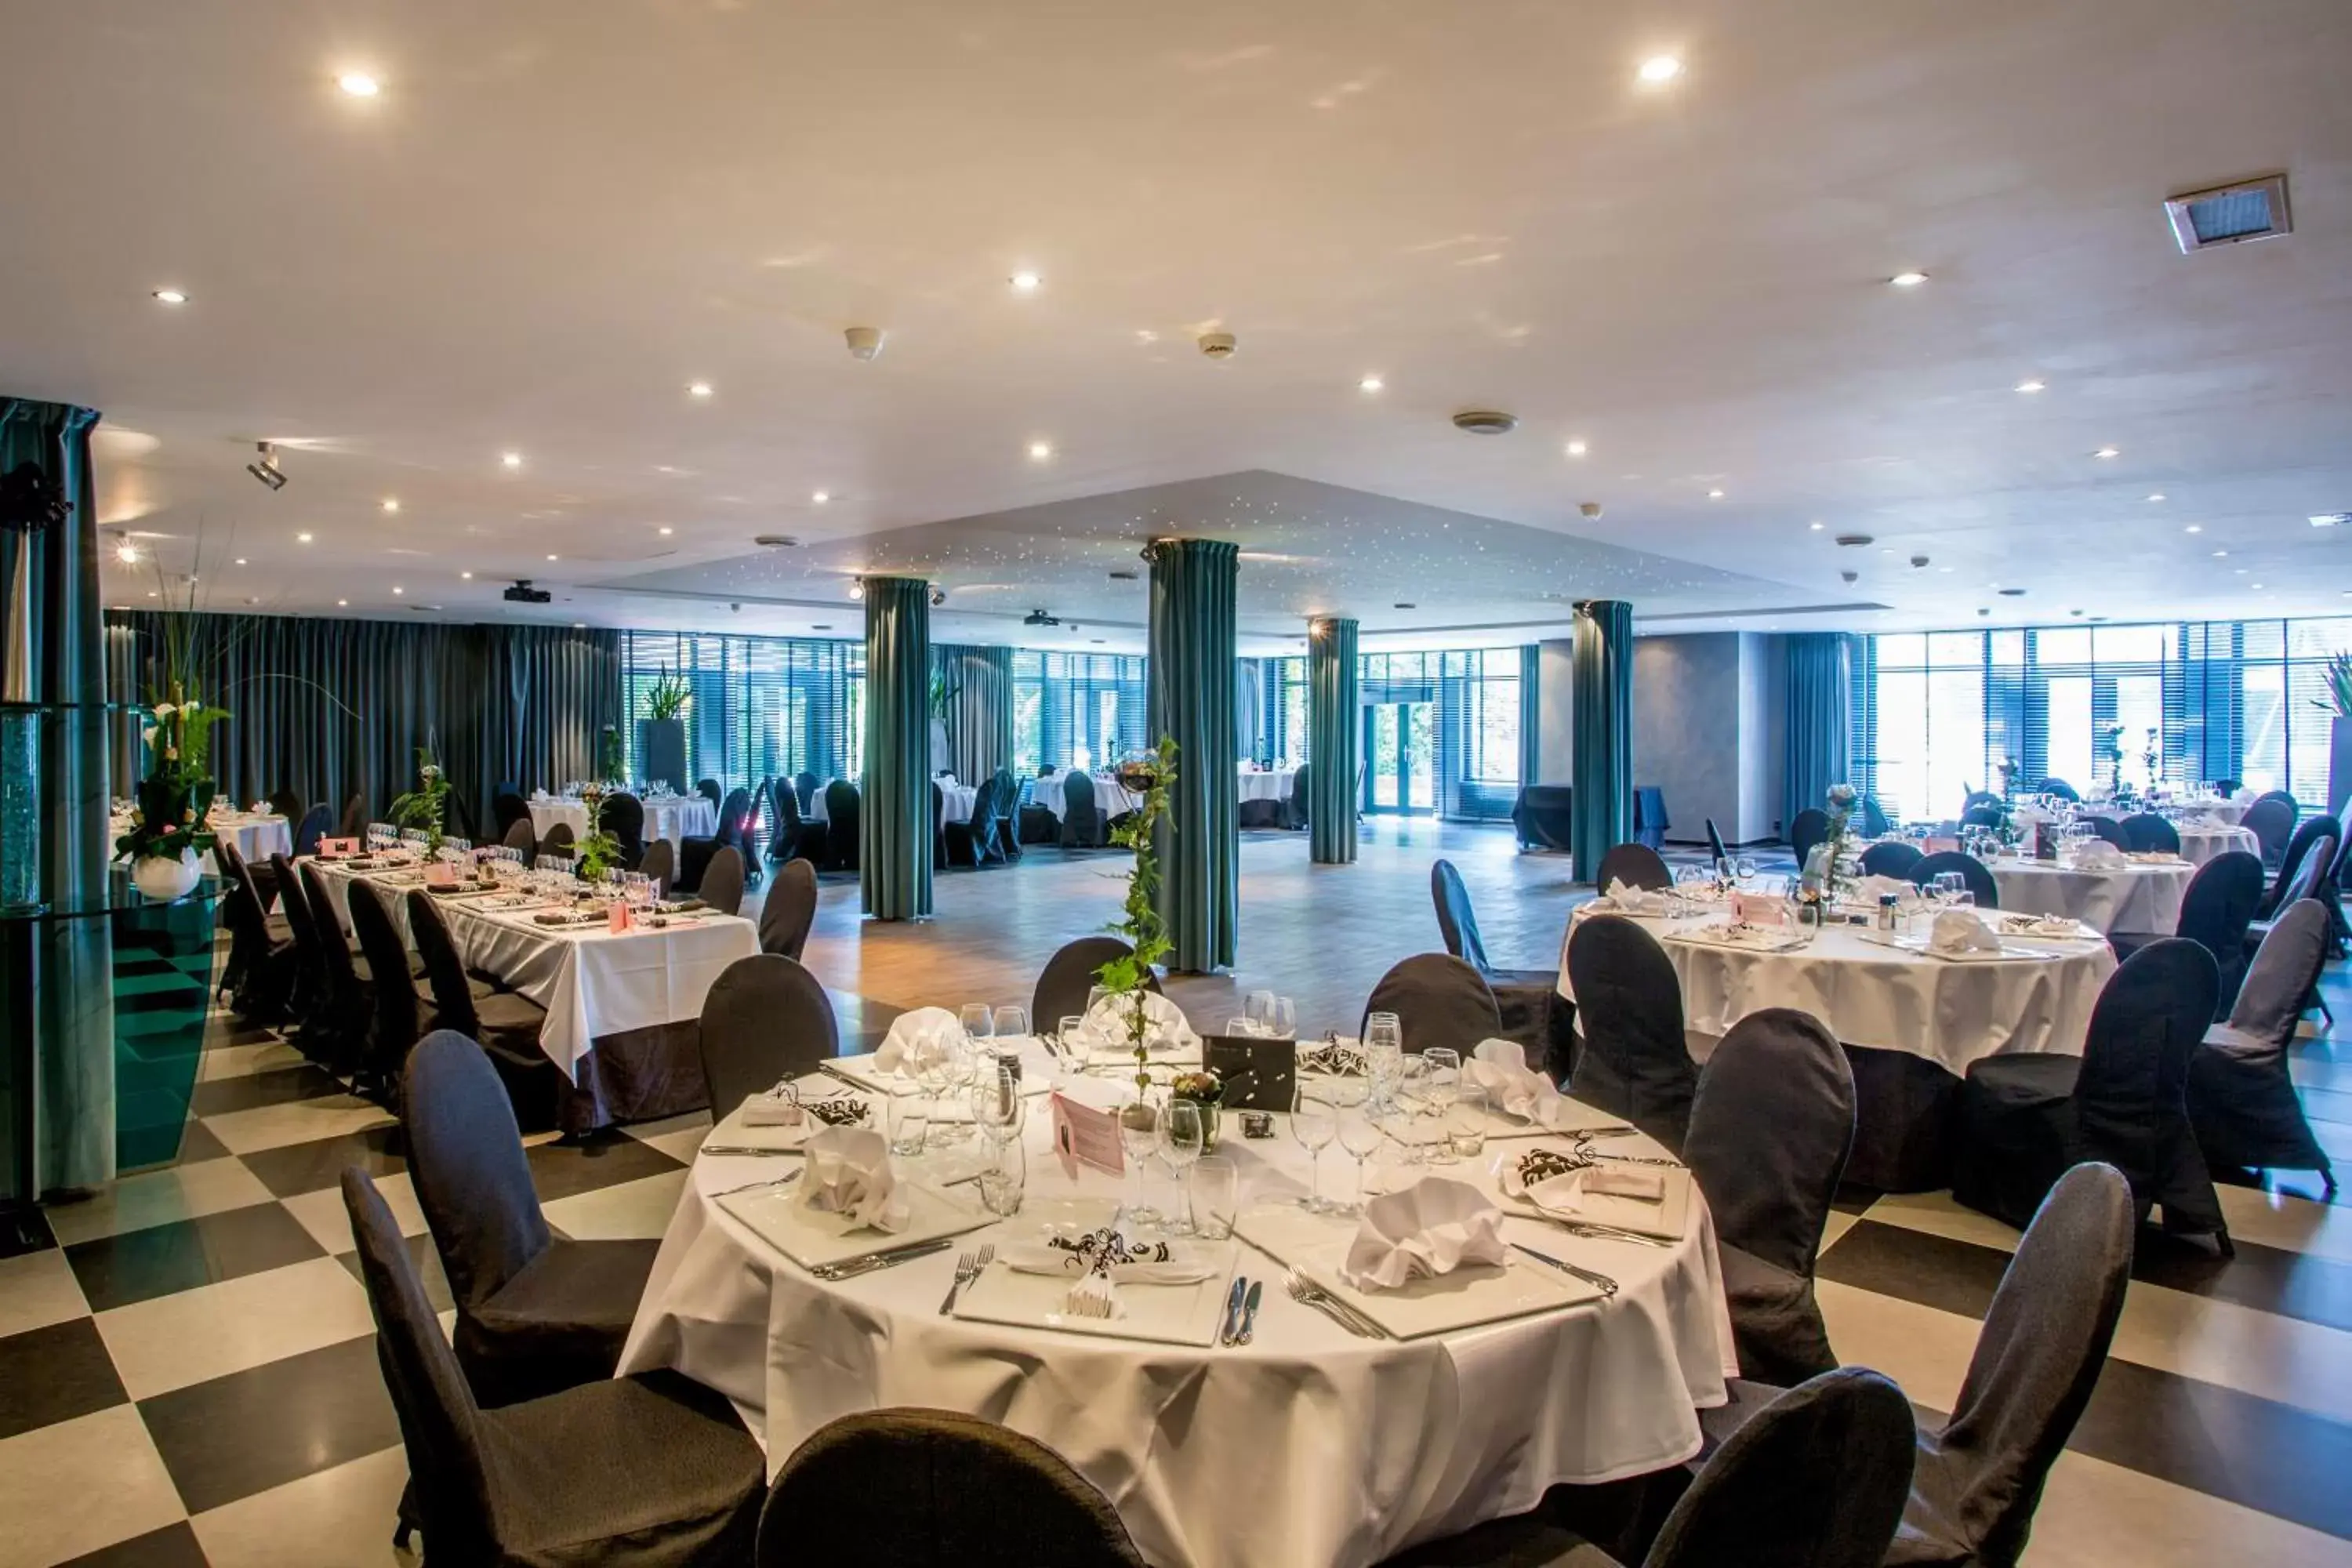 Banquet/Function facilities, Restaurant/Places to Eat in Van der Valk Hotel Beveren